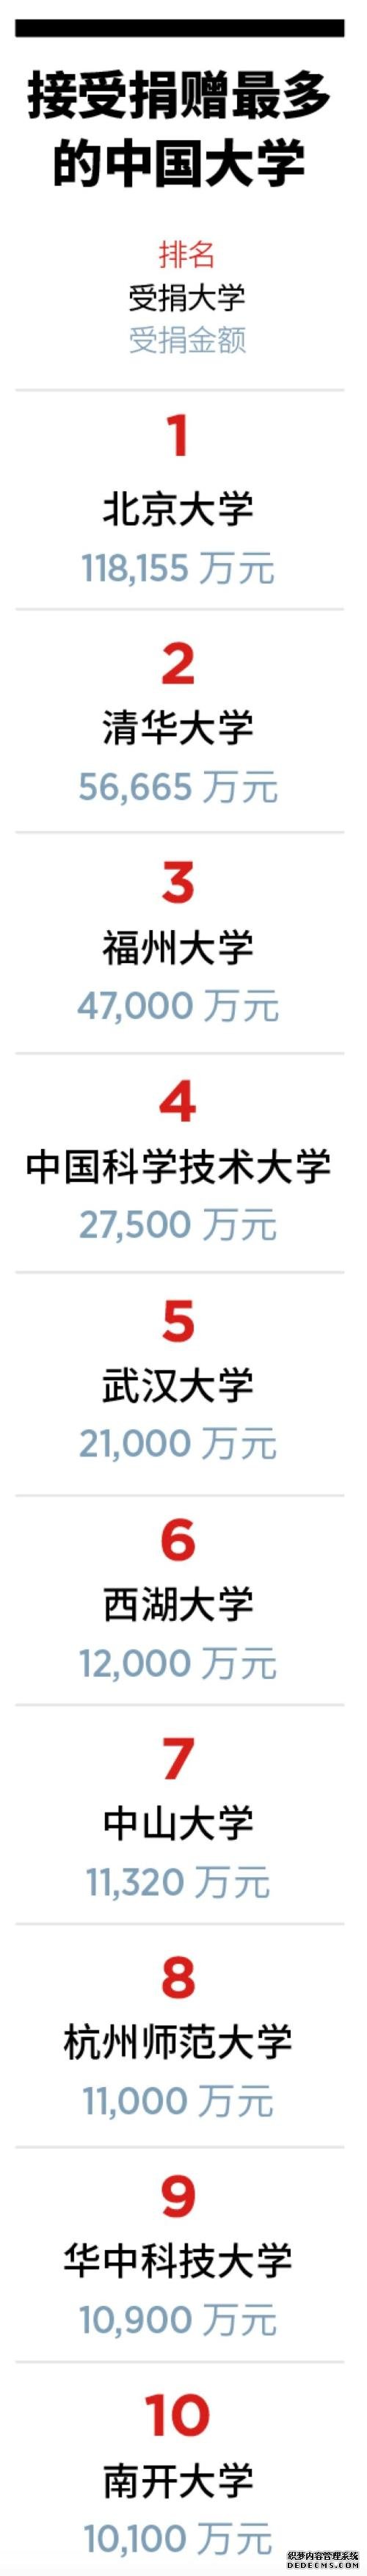 福布斯2019中国慈善榜：北大成为获捐最多高校，清华仅其一半